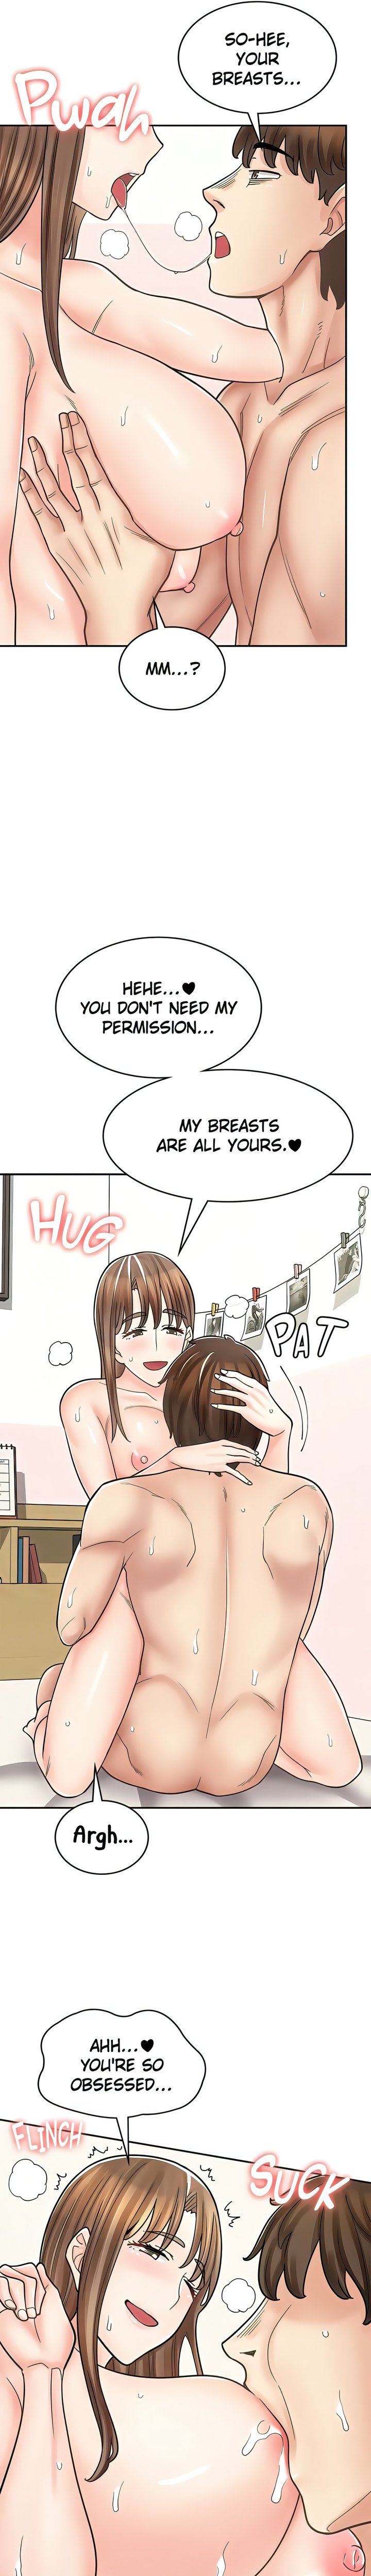 erotic-manga-cafe-girls-chap-41-19